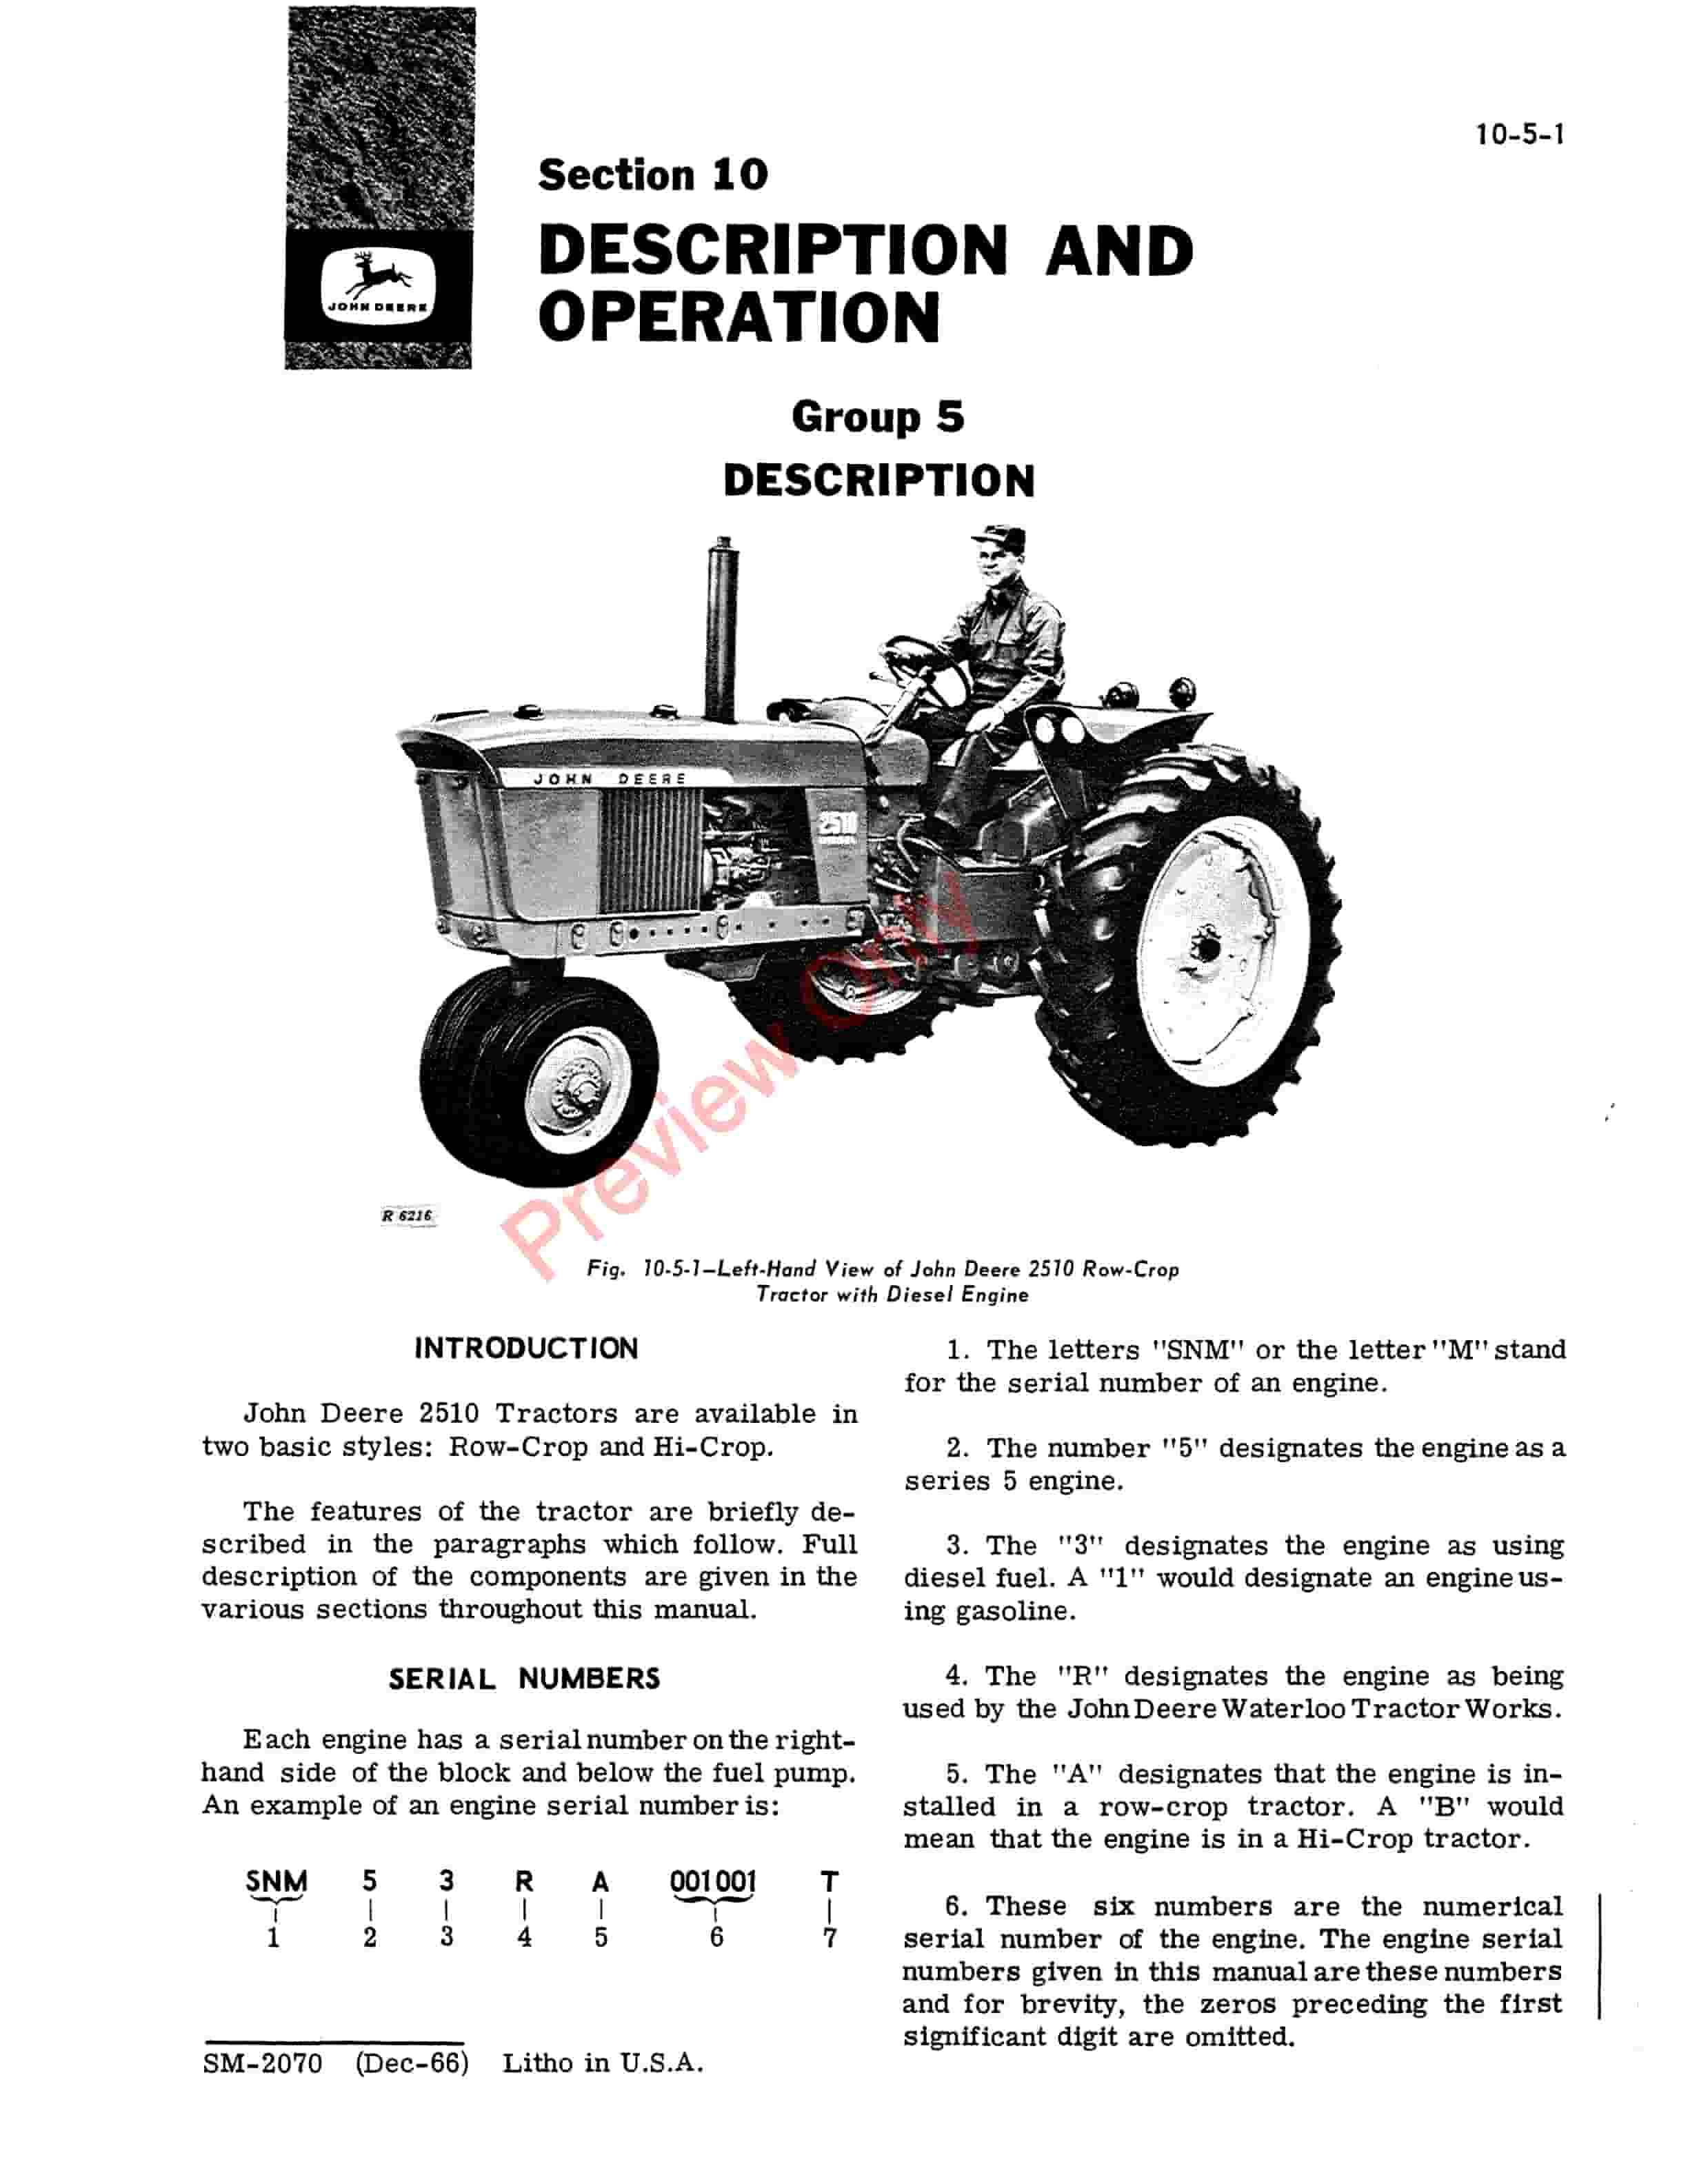 John Deere 2500 Series Tractors Service Manual SM2070 01DEC66 5